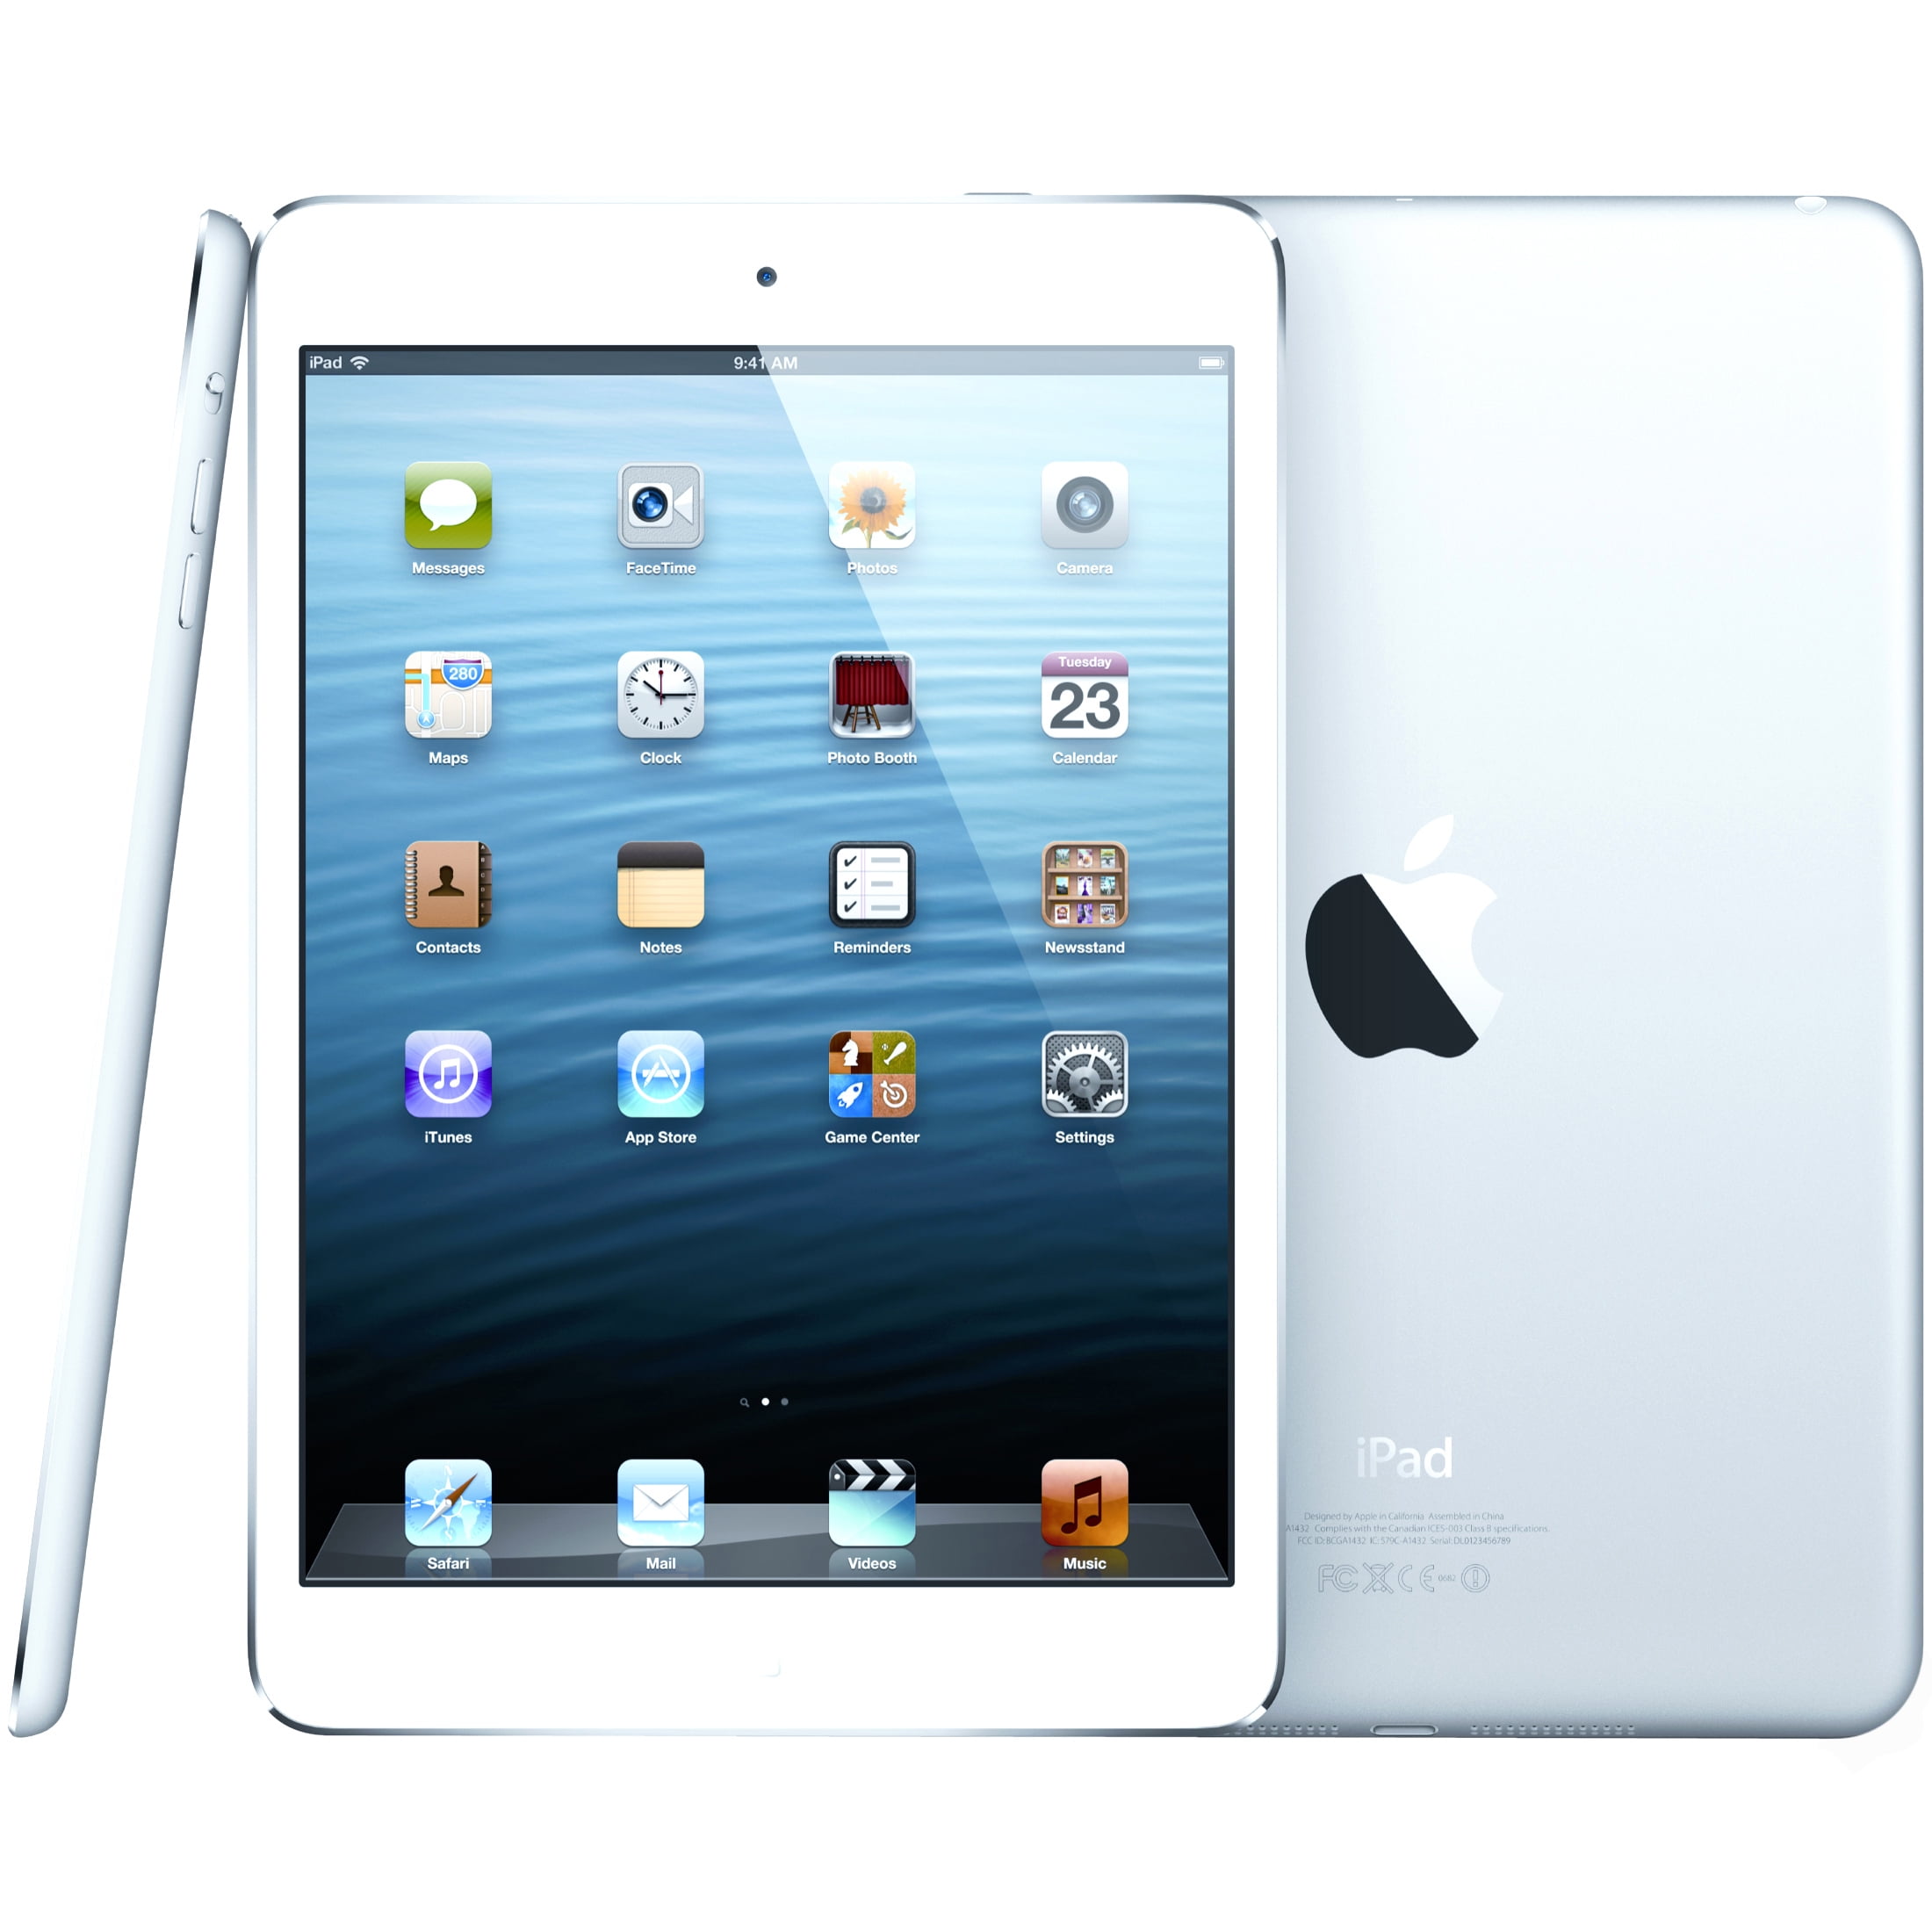 Apple Ipad Mini 2 Wi Fi Cellular Tablet 32 Gb 7 9 3g 4g Verizon Walmart Com Walmart Com